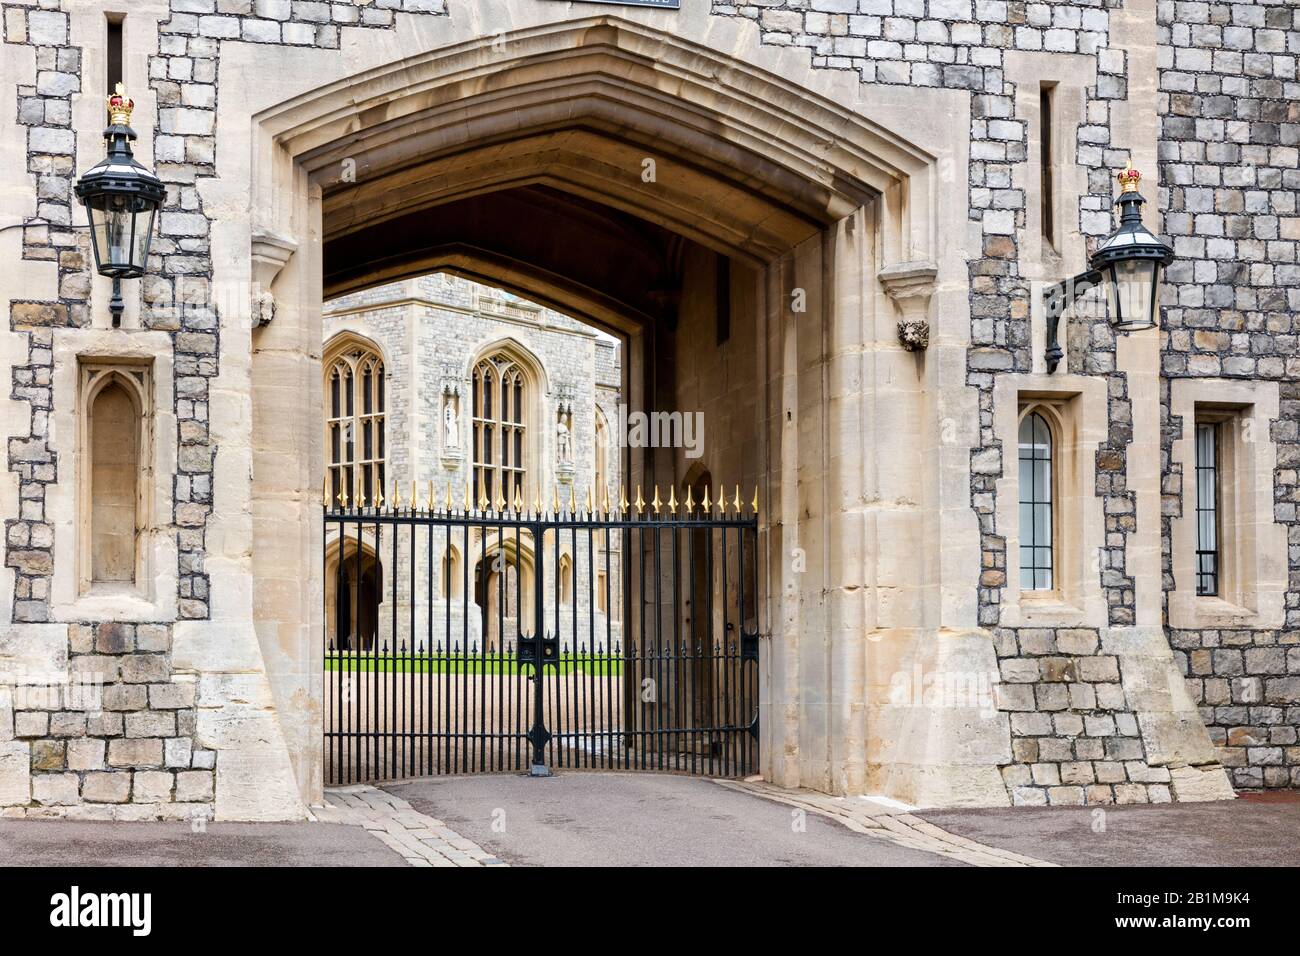 Porte Saint-George vers le château de Windsor, Windsor, Angleterre, Royaume-Uni Banque D'Images